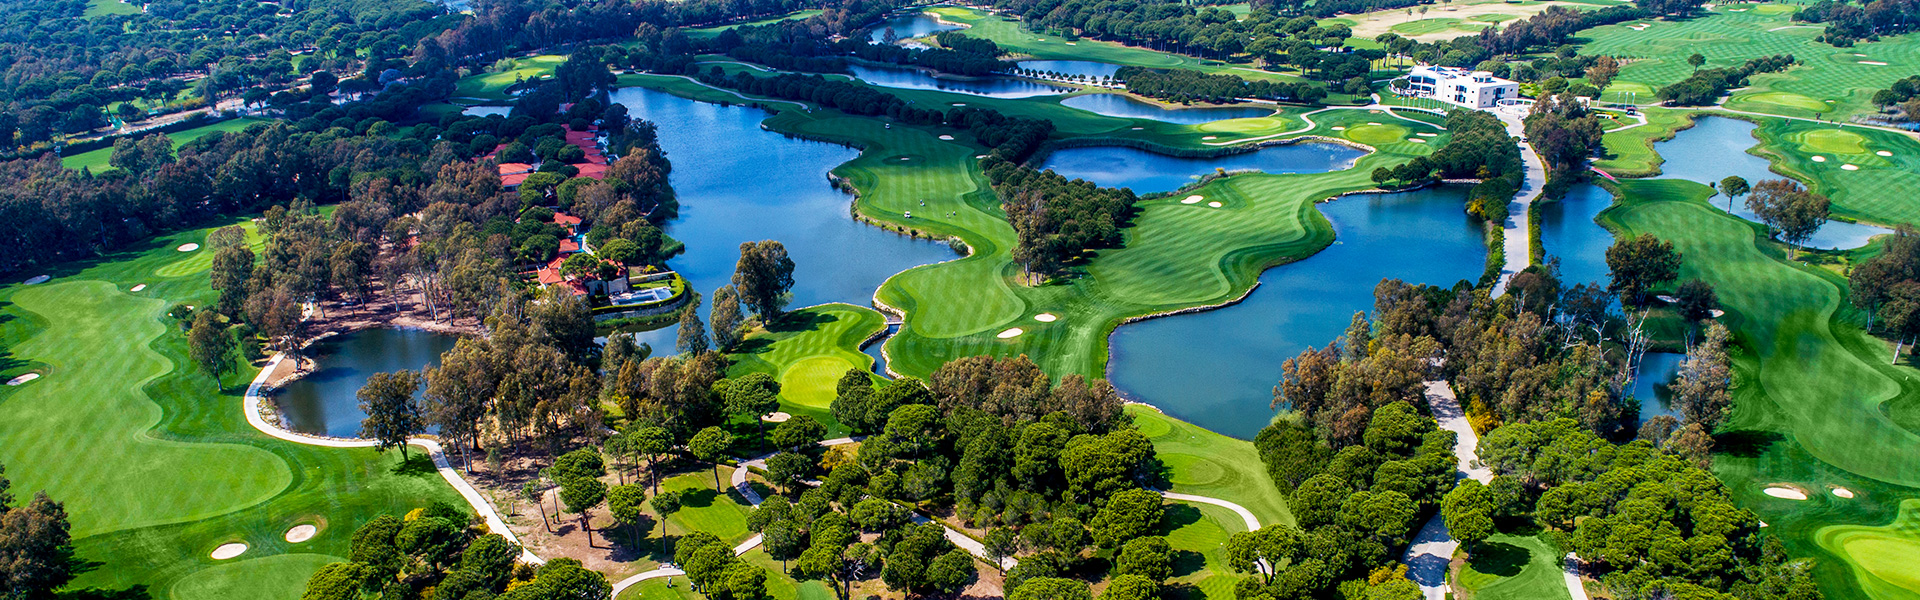 Bilyana Golf - Antalya Golf Club: The Pasha